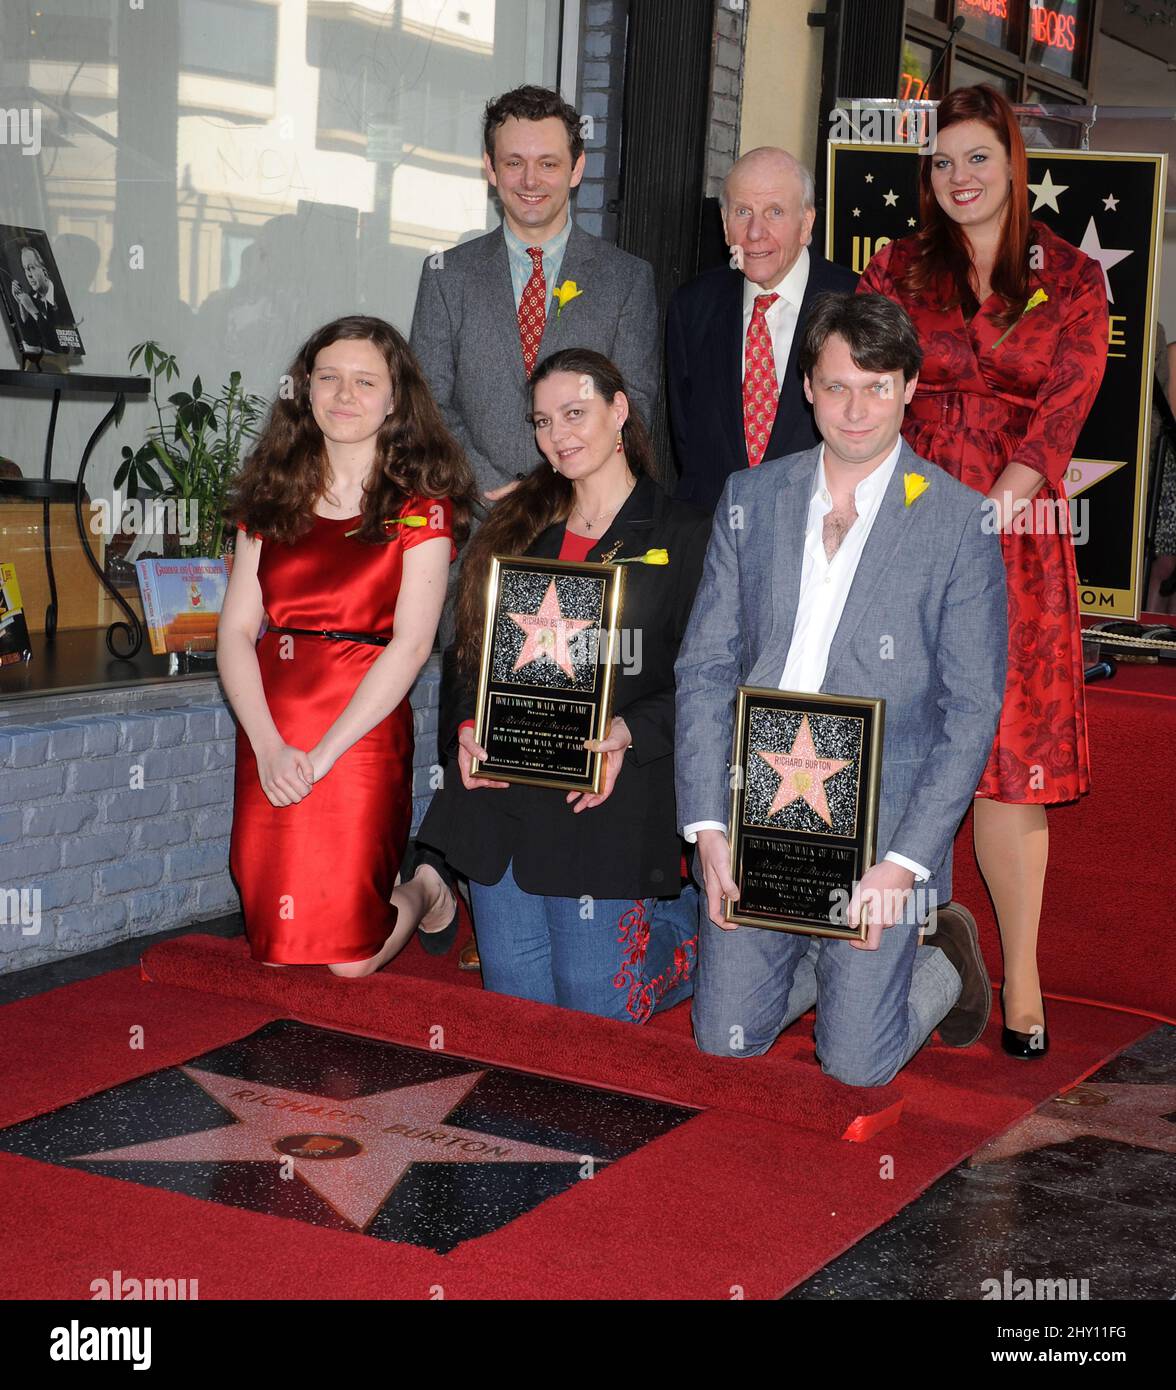 Michael Sheen, David Rowe-Beddoe, Charlotte Ritchie, Maria Burton, Morgan Ritchie im Bild, als Richard Burton auf dem Hollywood Walk of Fame mit einem Star geehrt wird Stockfoto